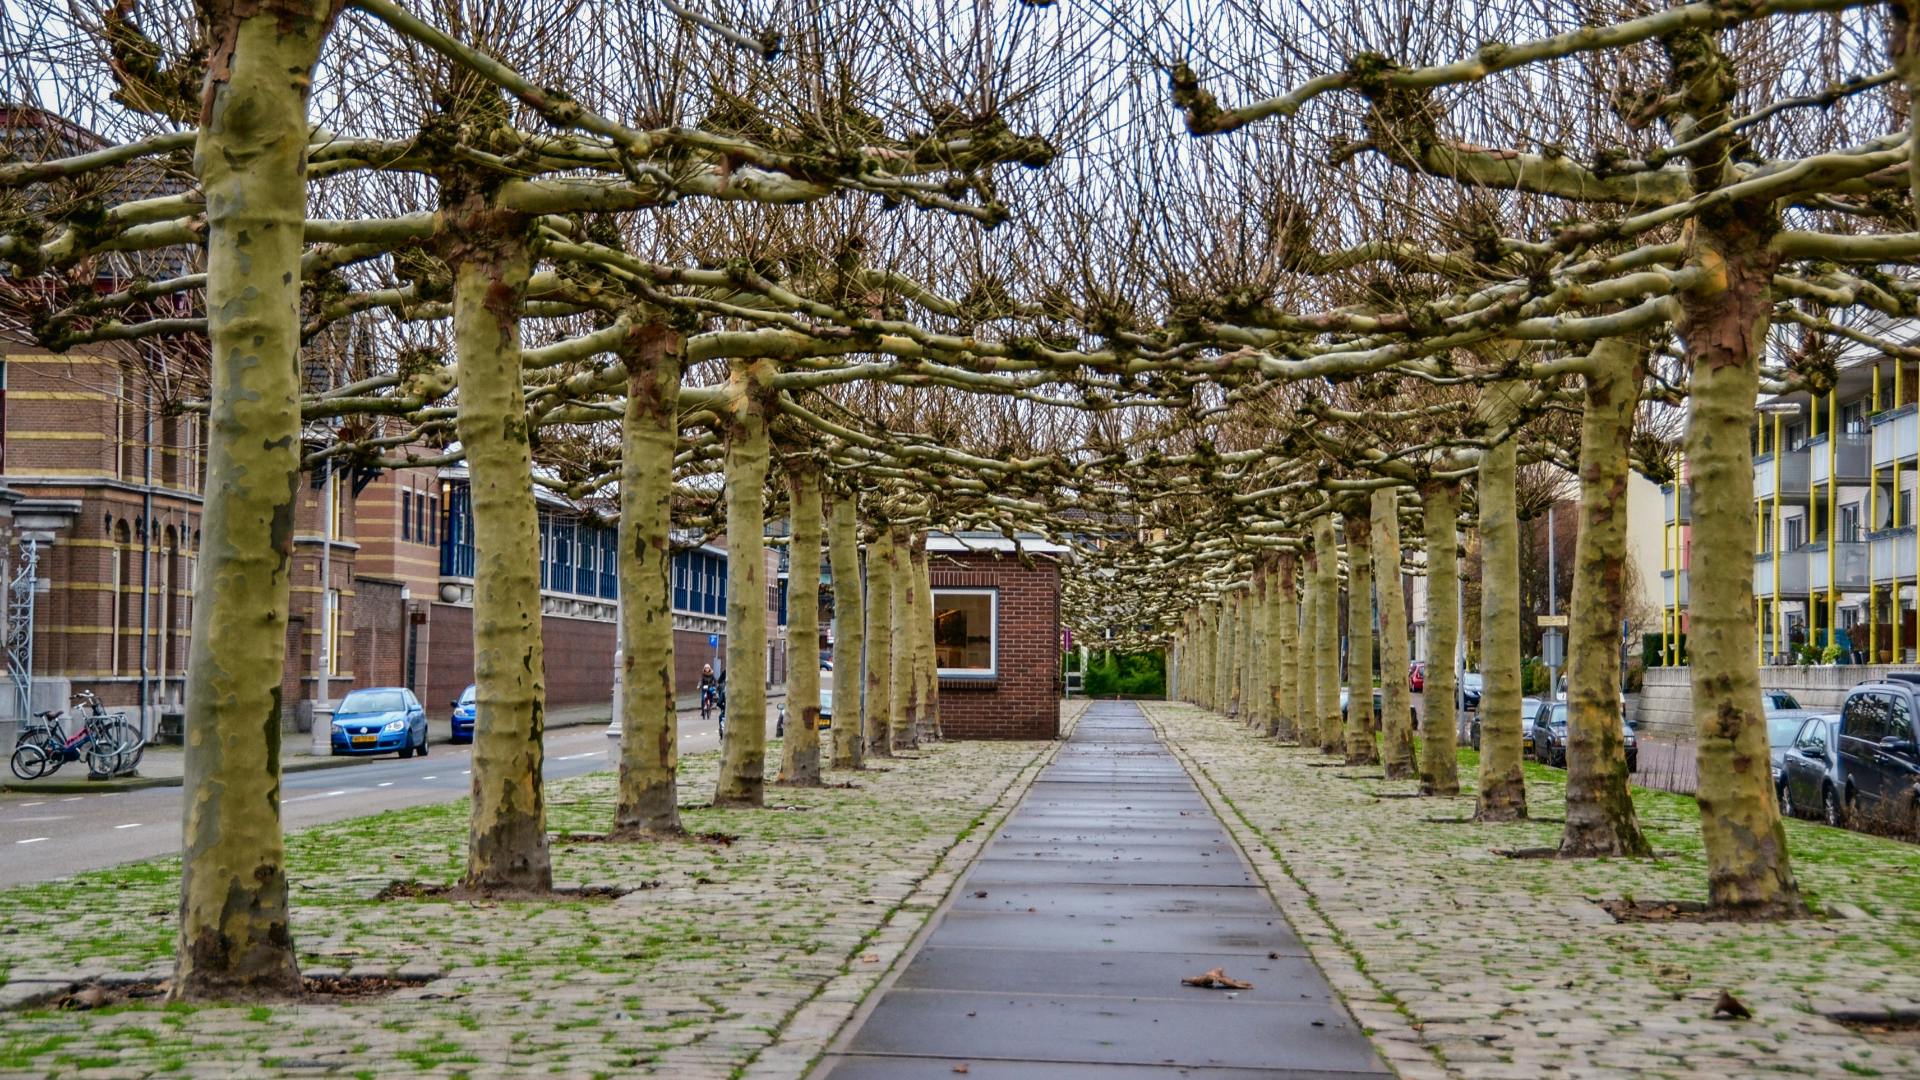 Samodzielny spacer odkrywający wielokulturowe sekrety wschodniego Amsterdamu